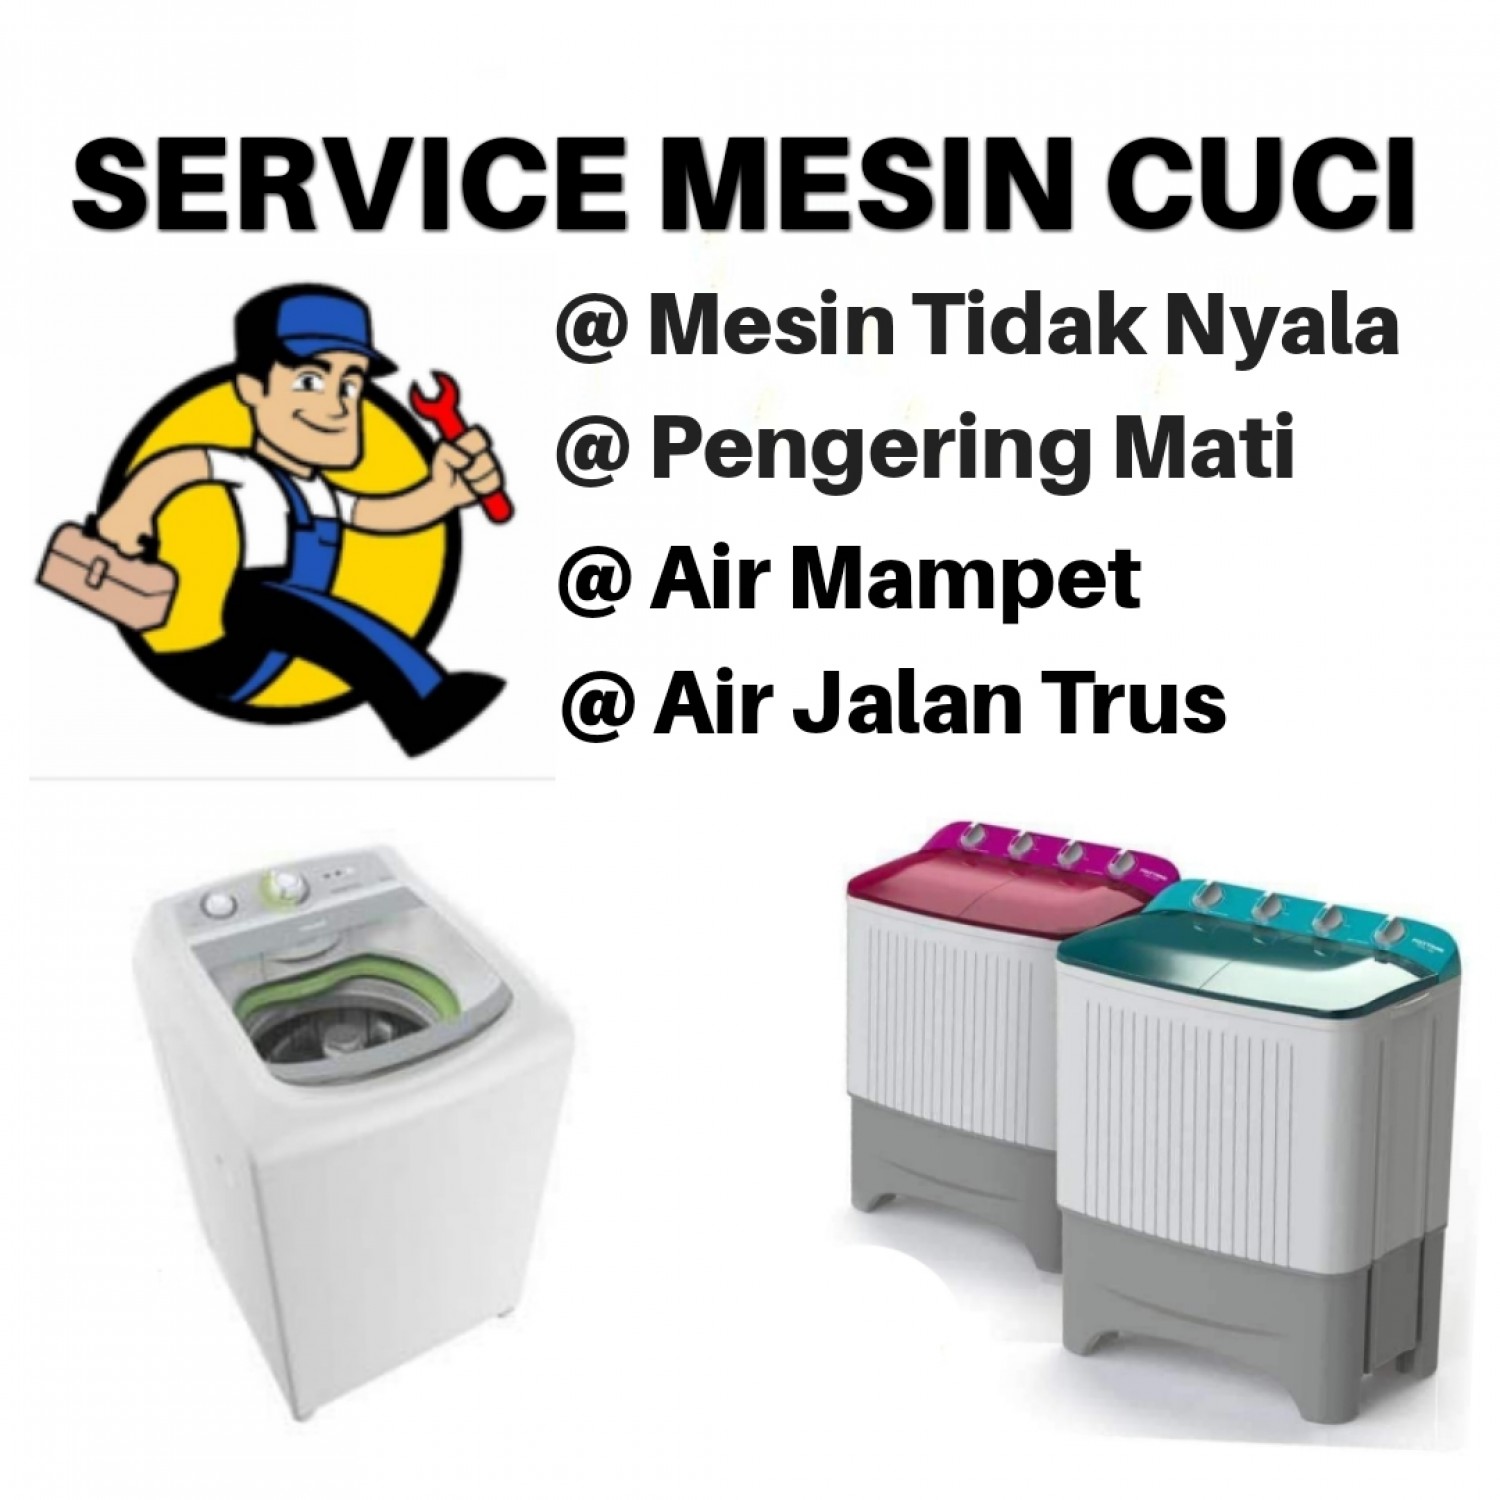 Jasa Service Mesin Cuci Panggilan Pedurenan Mustika Jaya Kota Bekasi